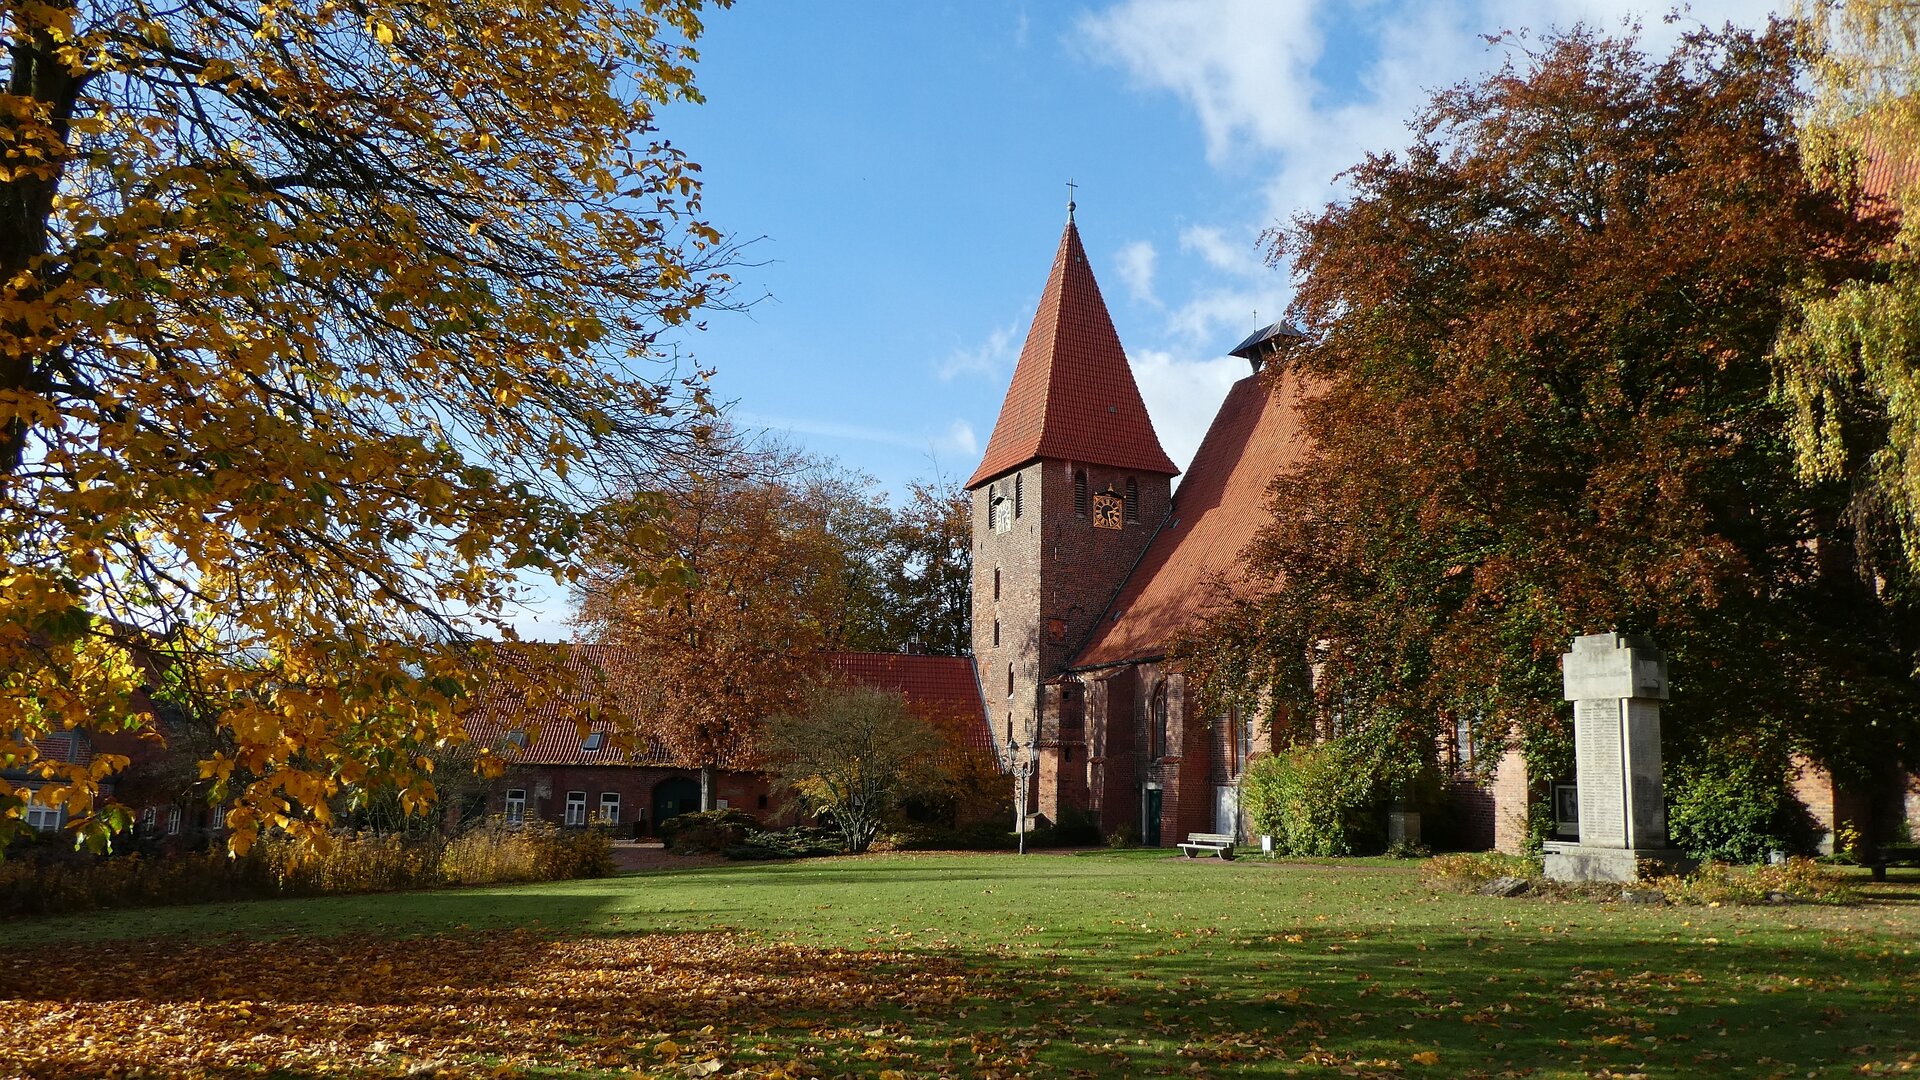 Bäume mit Herbstlaub, eine Wiese und blauer Himmel umrahmen den Kirchturm und die angrenzenden Gebäude des Klosters Ebstorfs